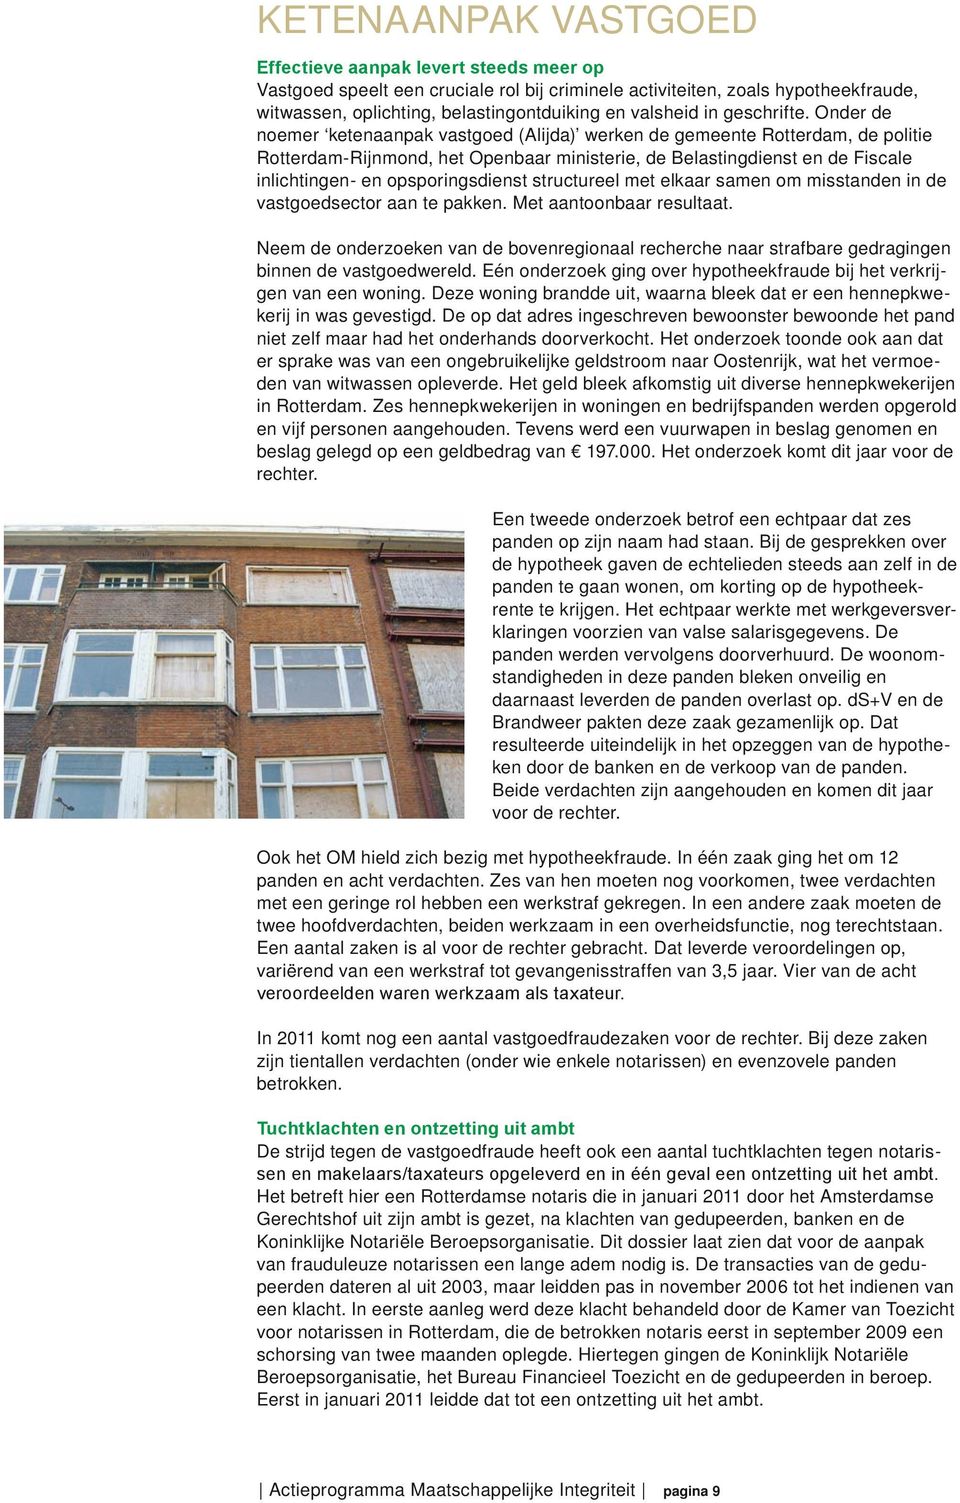 Onder de noemer ketenaanpak vastgoed (Alijda) werken de gemeente Rotterdam, de politie Rotterdam-Rijnmond, het Openbaar ministerie, de Belastingdienst en de Fiscale inlichtingen- en opsporingsdienst